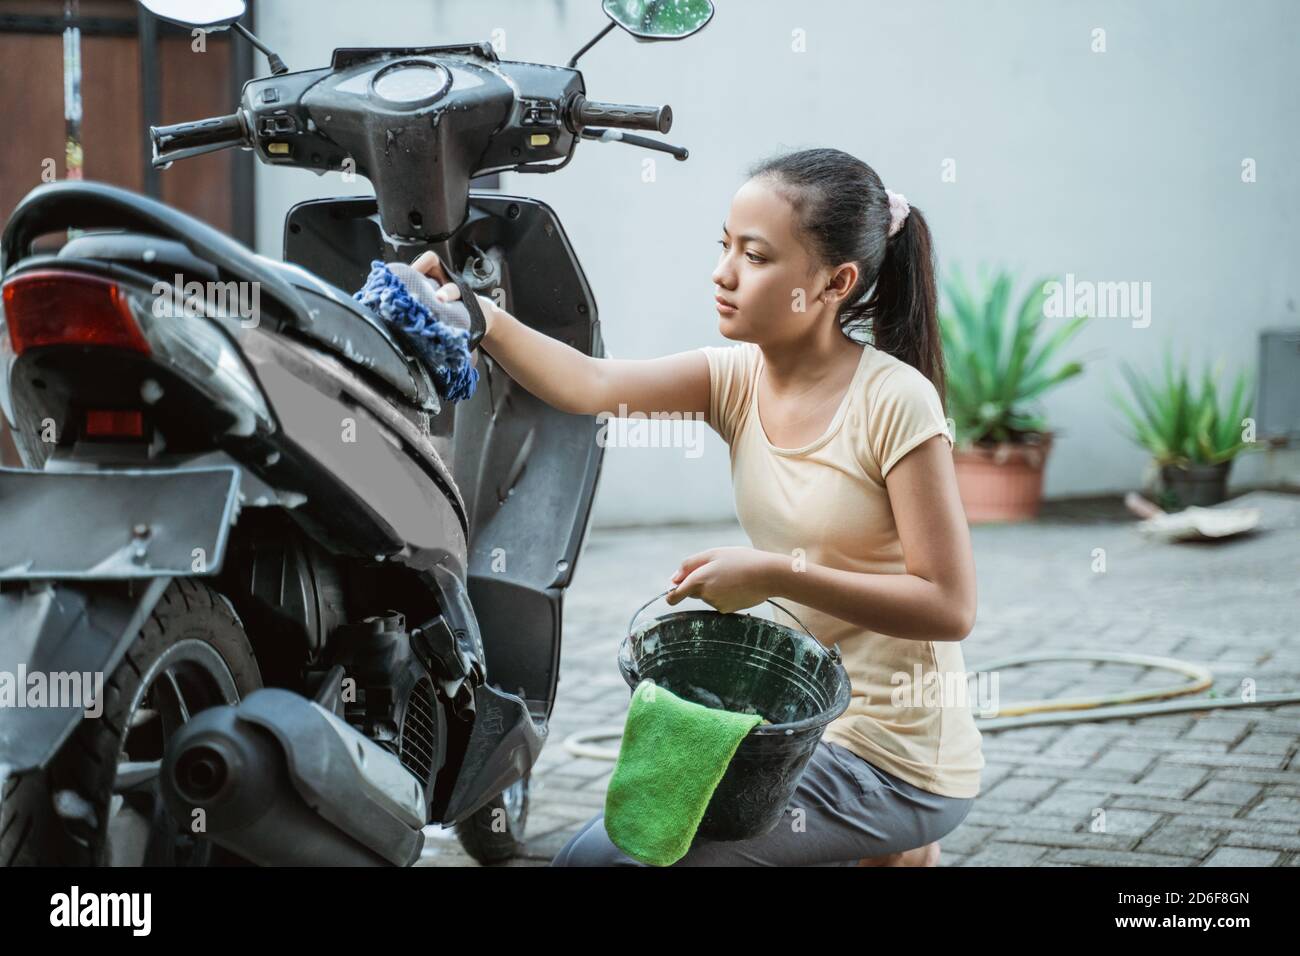 asiatische junge Mädchen waschen seine Motorrad-Roller mit Seife und  Schwamm zu Hause Stockfotografie - Alamy